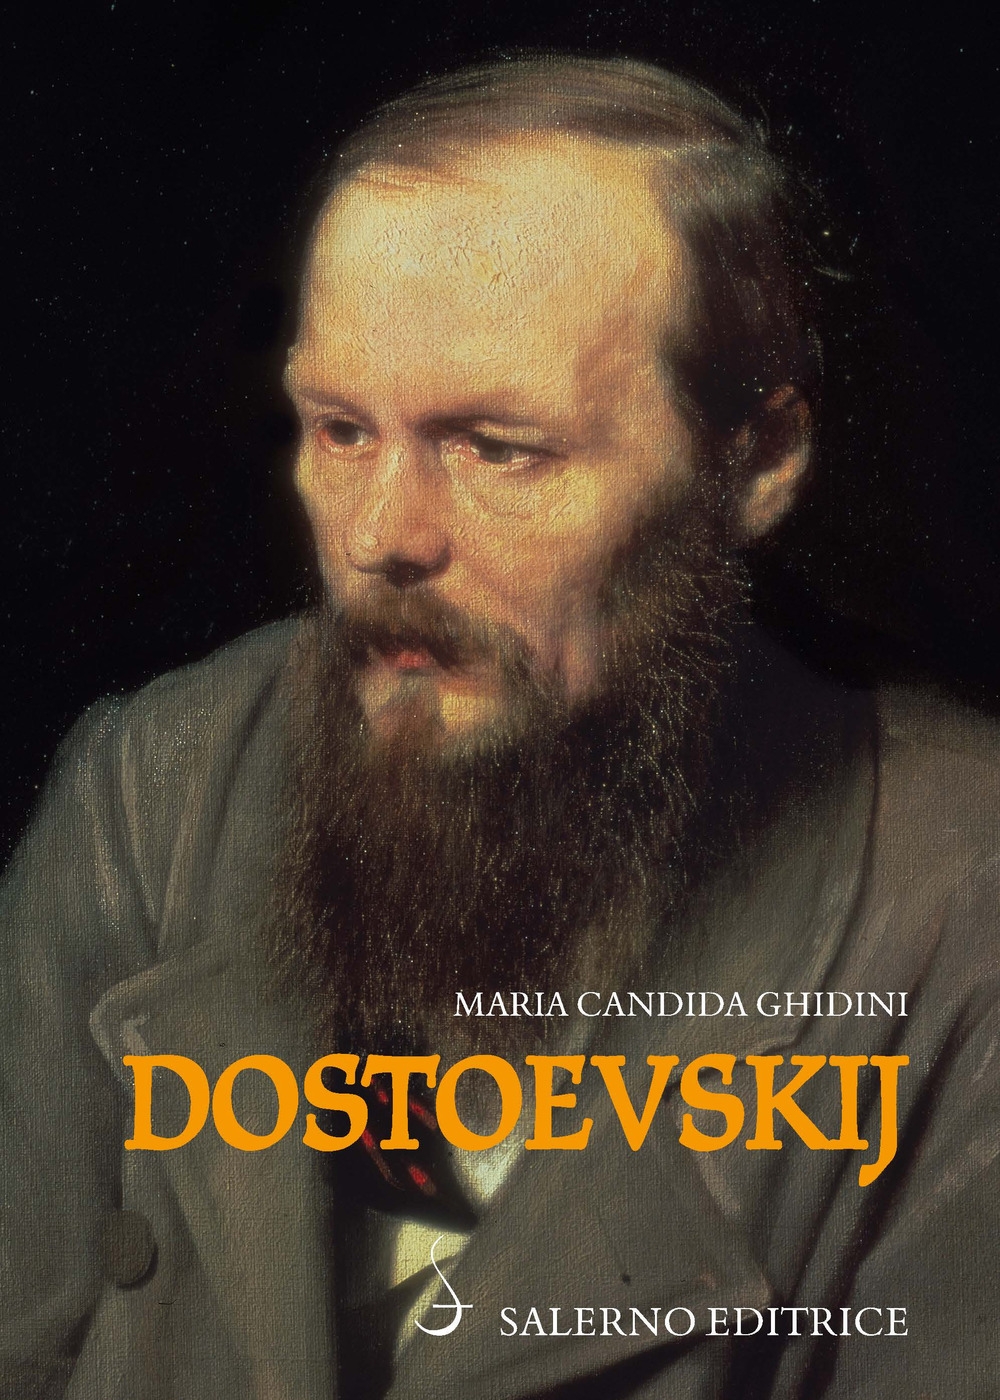 Libri Ghidini Maria Candida - Dostoevskij NUOVO SIGILLATO, EDIZIONE DEL 07/12/2017 SUBITO DISPONIBILE